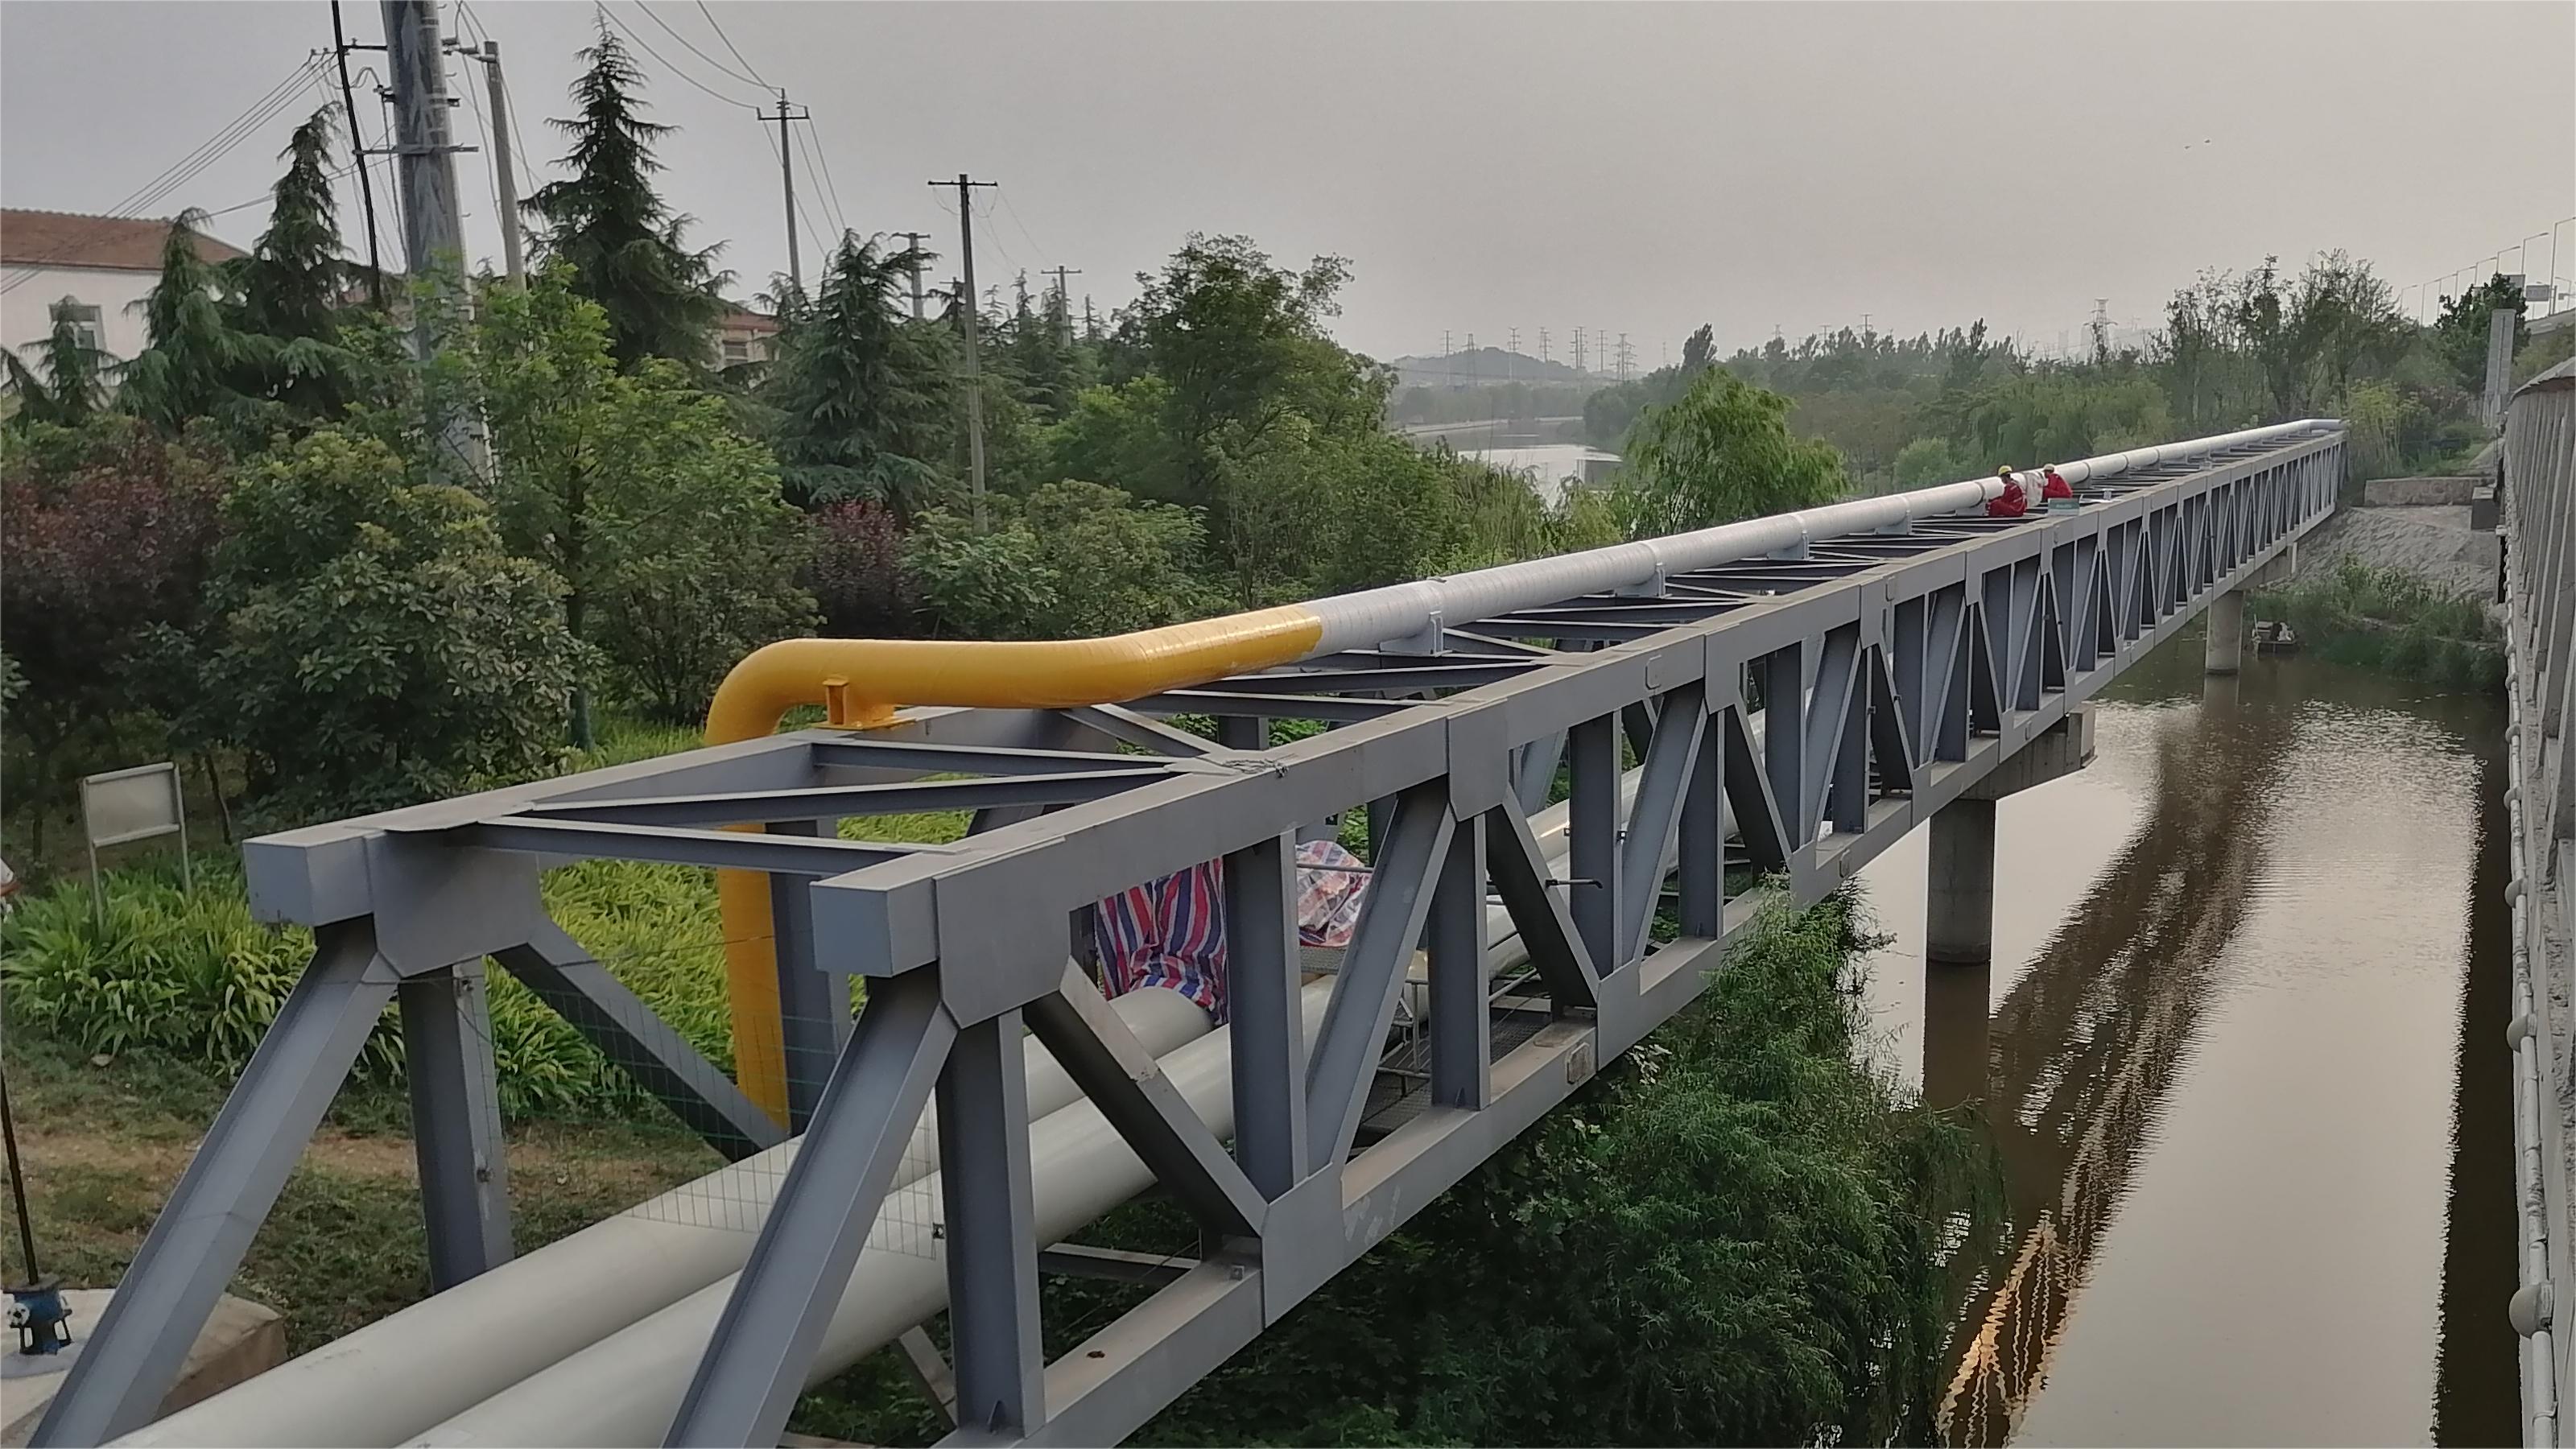 Bridge-Cross & Overhead Pipelines